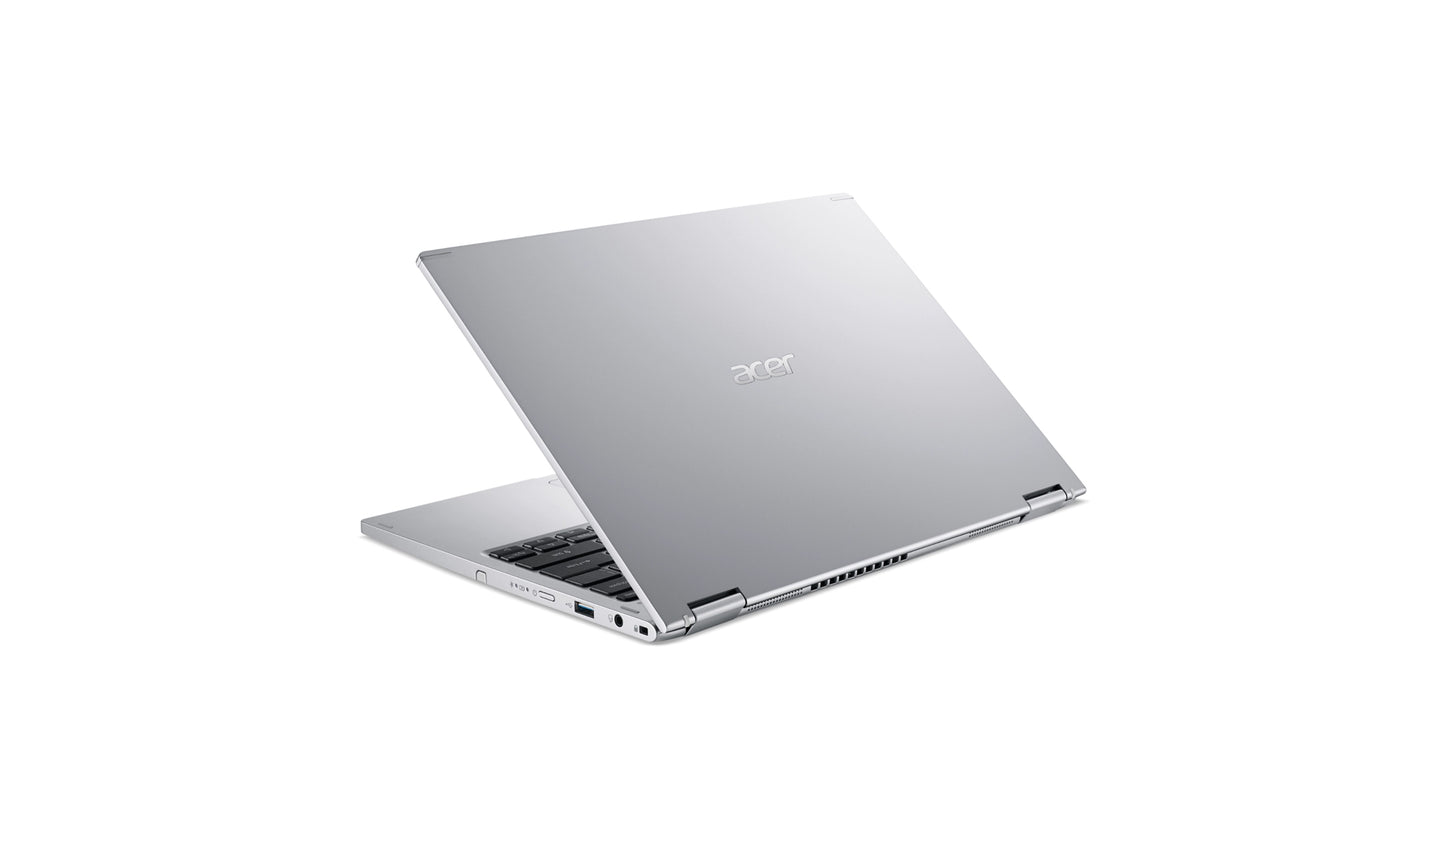 لاب توب Acer Spin، معالج Intel® Core™ i5-1135G7 رباعي النواة بسرعة 2.40 جيجا هرتز، وذاكرة وصول عشوائي سعتها 8 جيجا بايت، ومحرك أقراص SSD سعة 512 جيجا بايت. 